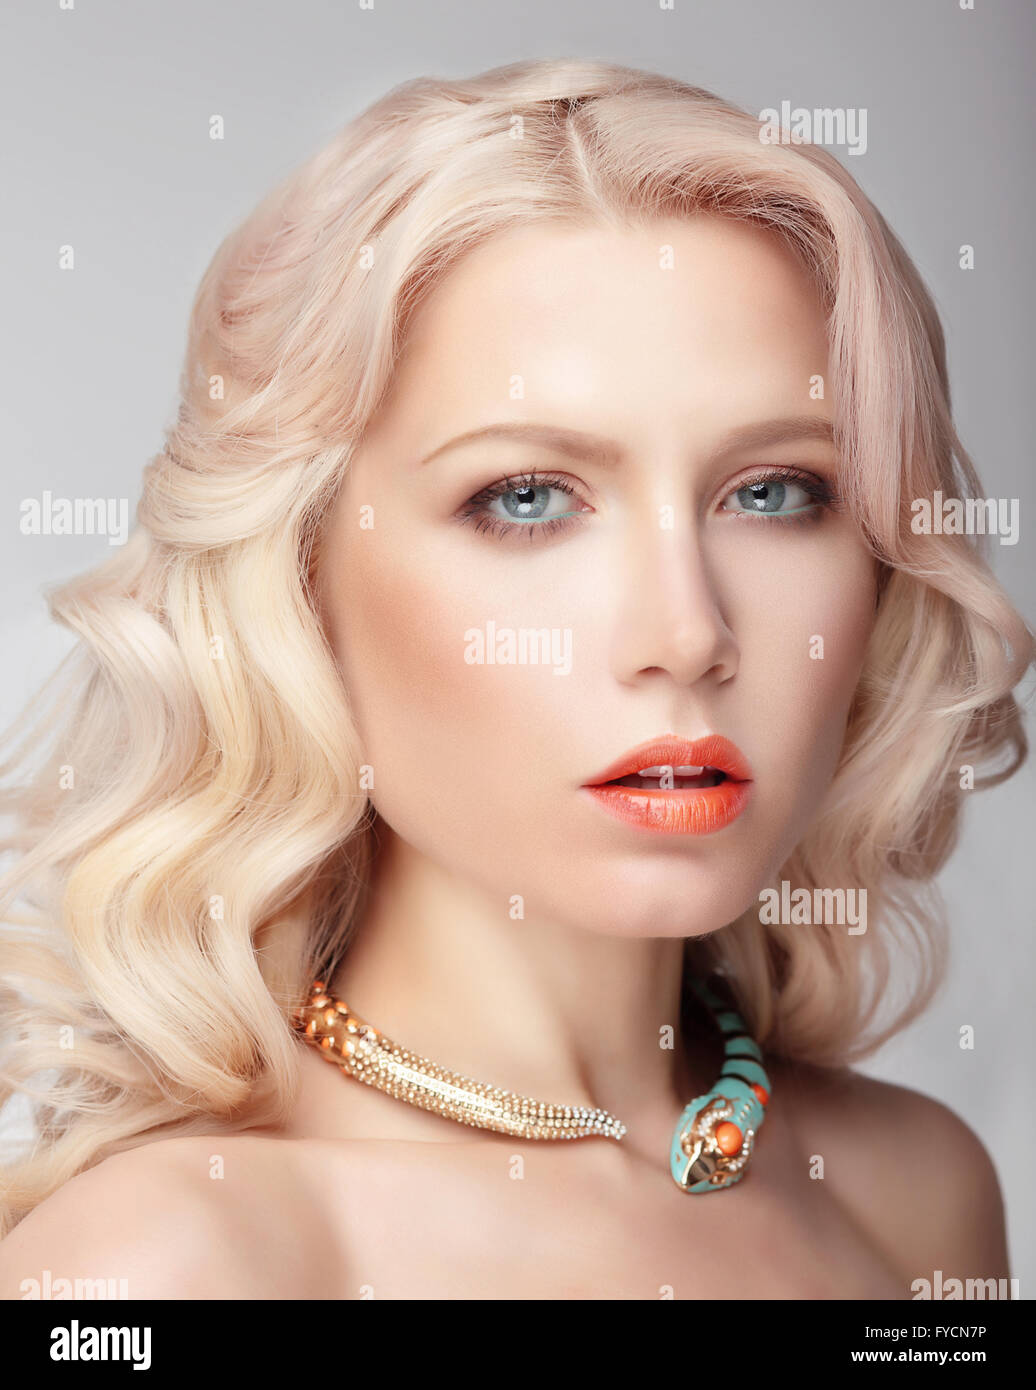 Portrait de la blonde avec des yeux bleus et maquillage naturel, décoration sur le cou. Banque D'Images